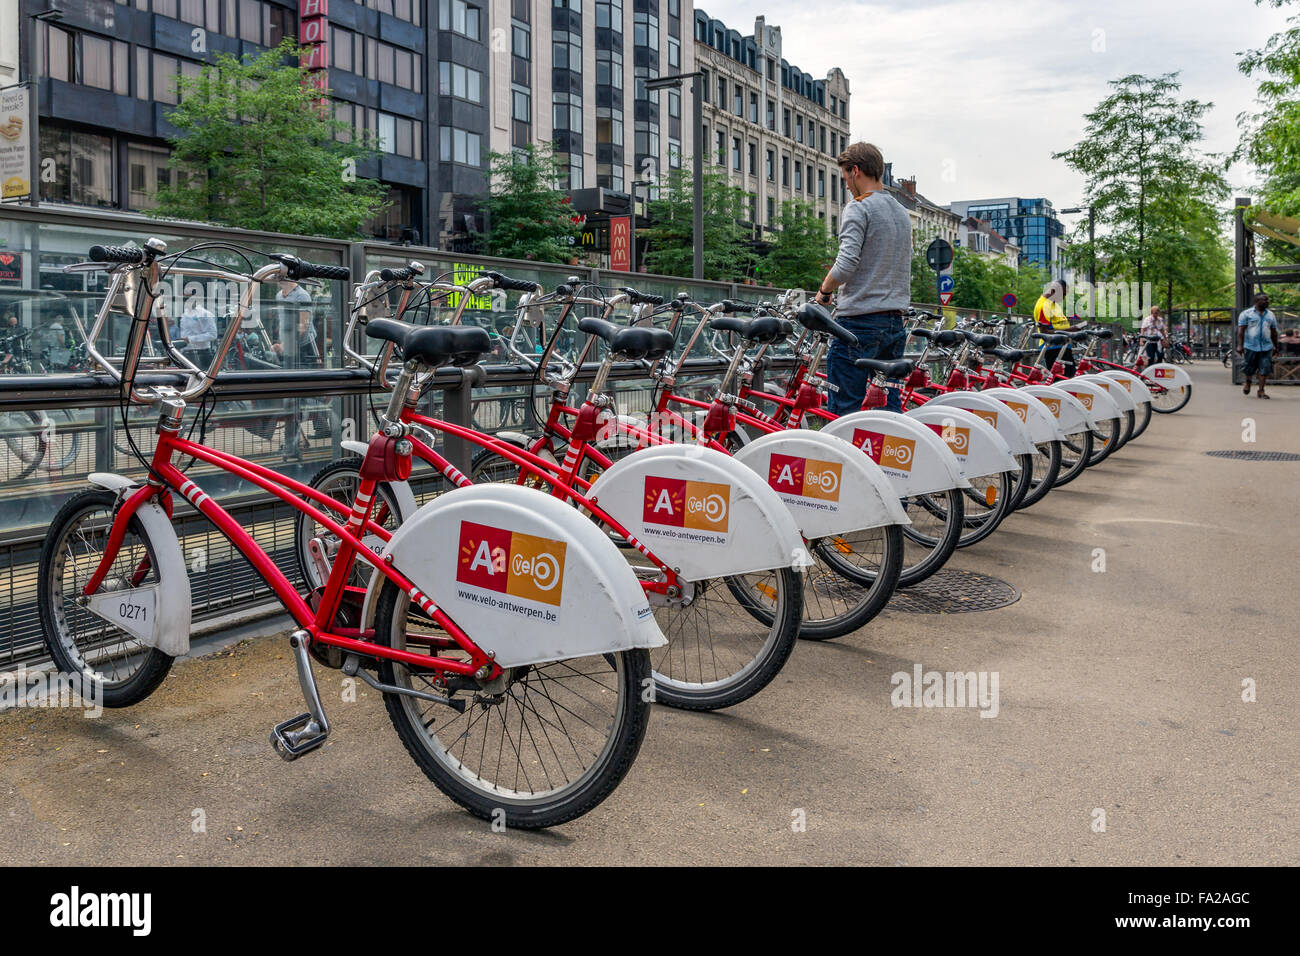 Anversa, Belgio - 11 ago: l uomo è il parcheggio di una bicicletta a un sistema automatico di noleggio biciclette per le biciclette condivise Foto Stock